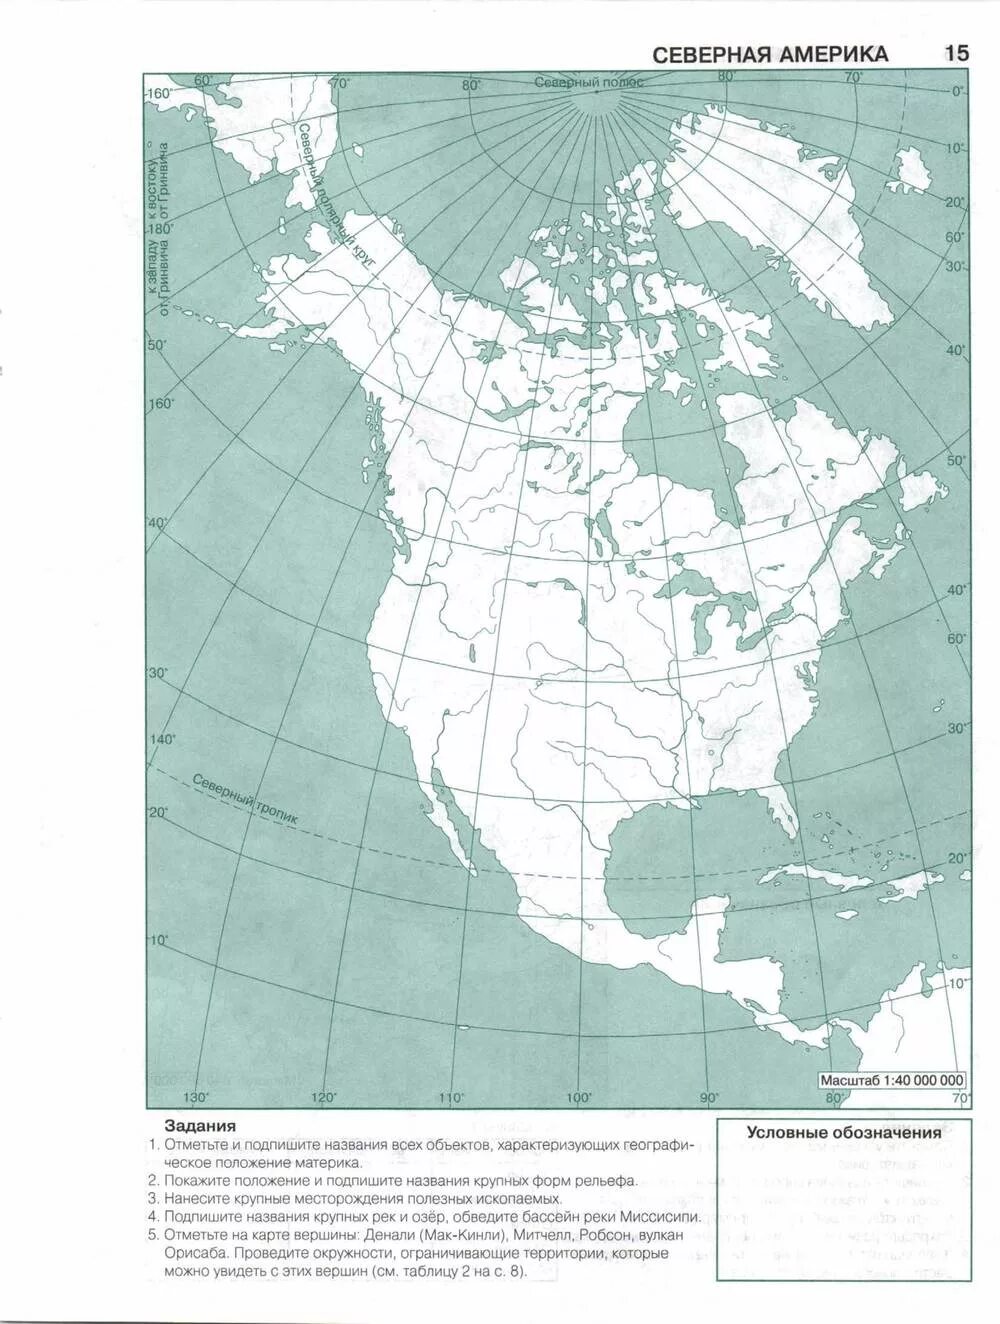 География 7 класс рабочая тетрадь северная америка. География 7 класс контурные карты Полярная звезда Северная Америка. Физическая карта Северной Америки 7 класс география контурная карта. Контурная карта по географии 7 класс Северная Америка с 7. Политическая карта Северной Америки 7 класс контурная карта.